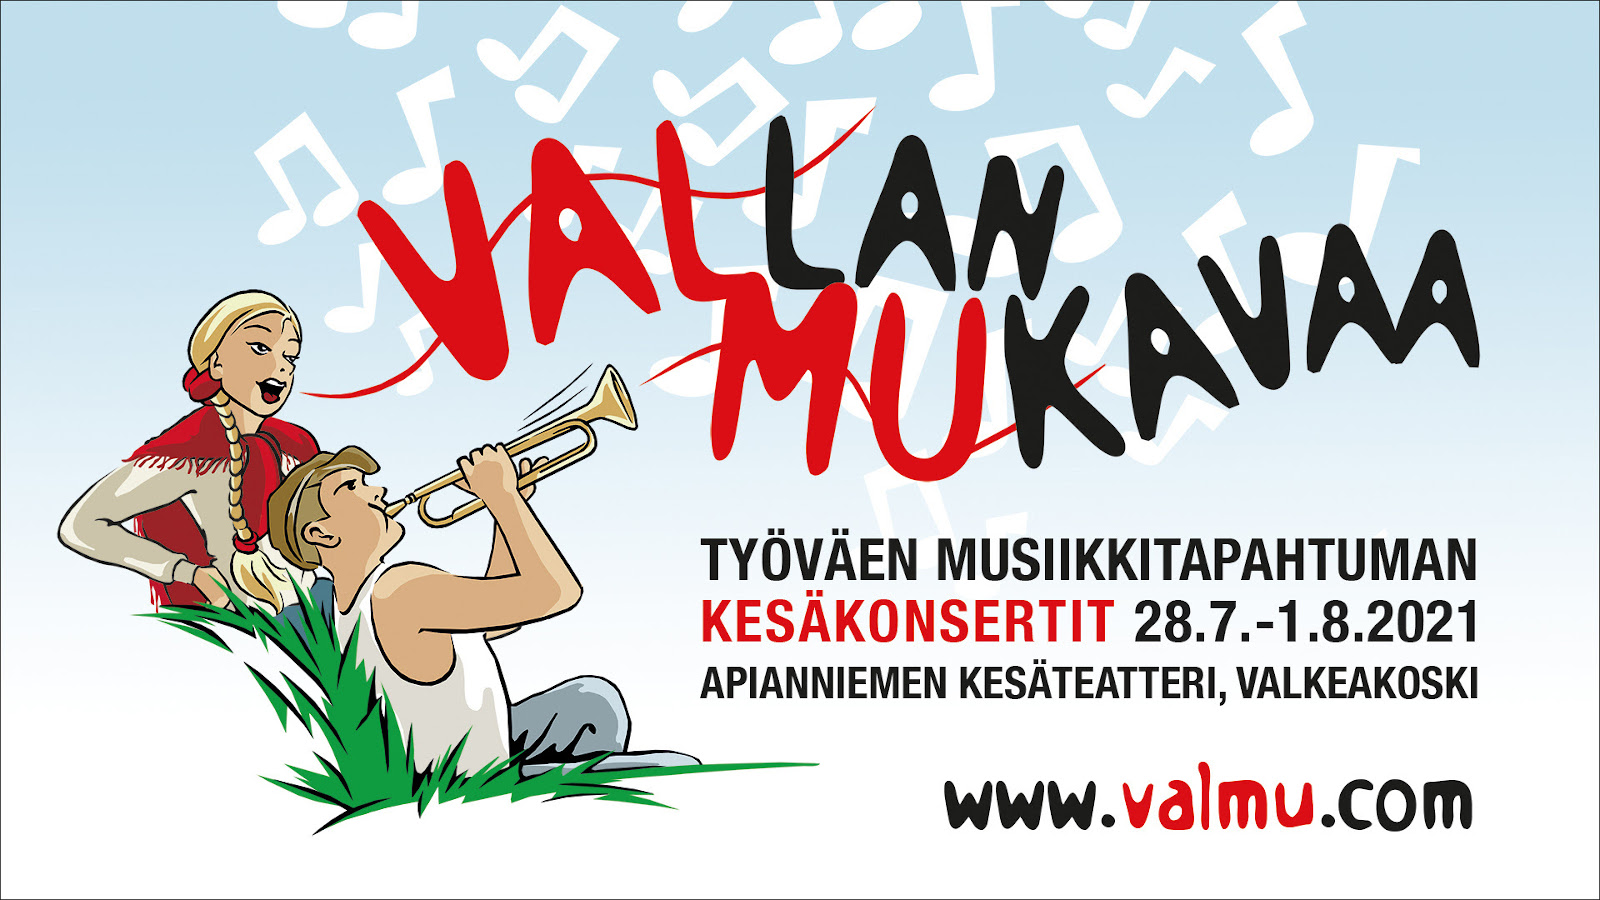 Työväen Musiikkitapahtuman kesäkonsertit 28.7.-1.8.2021 on viikon kestävä minifestivaali Valkeakoskella. 